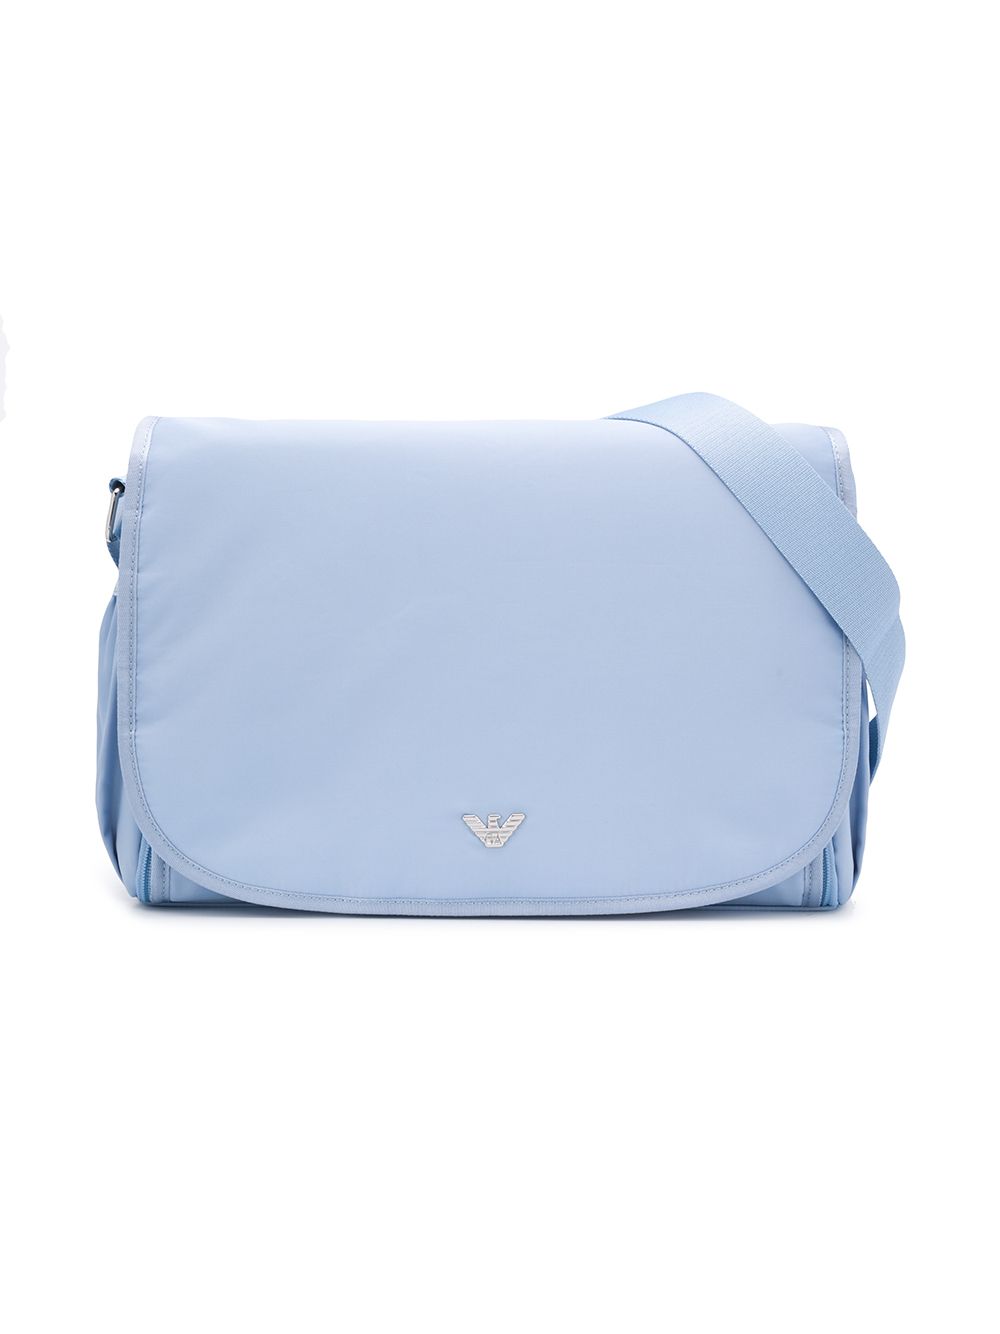 Light blue mom bag with logo